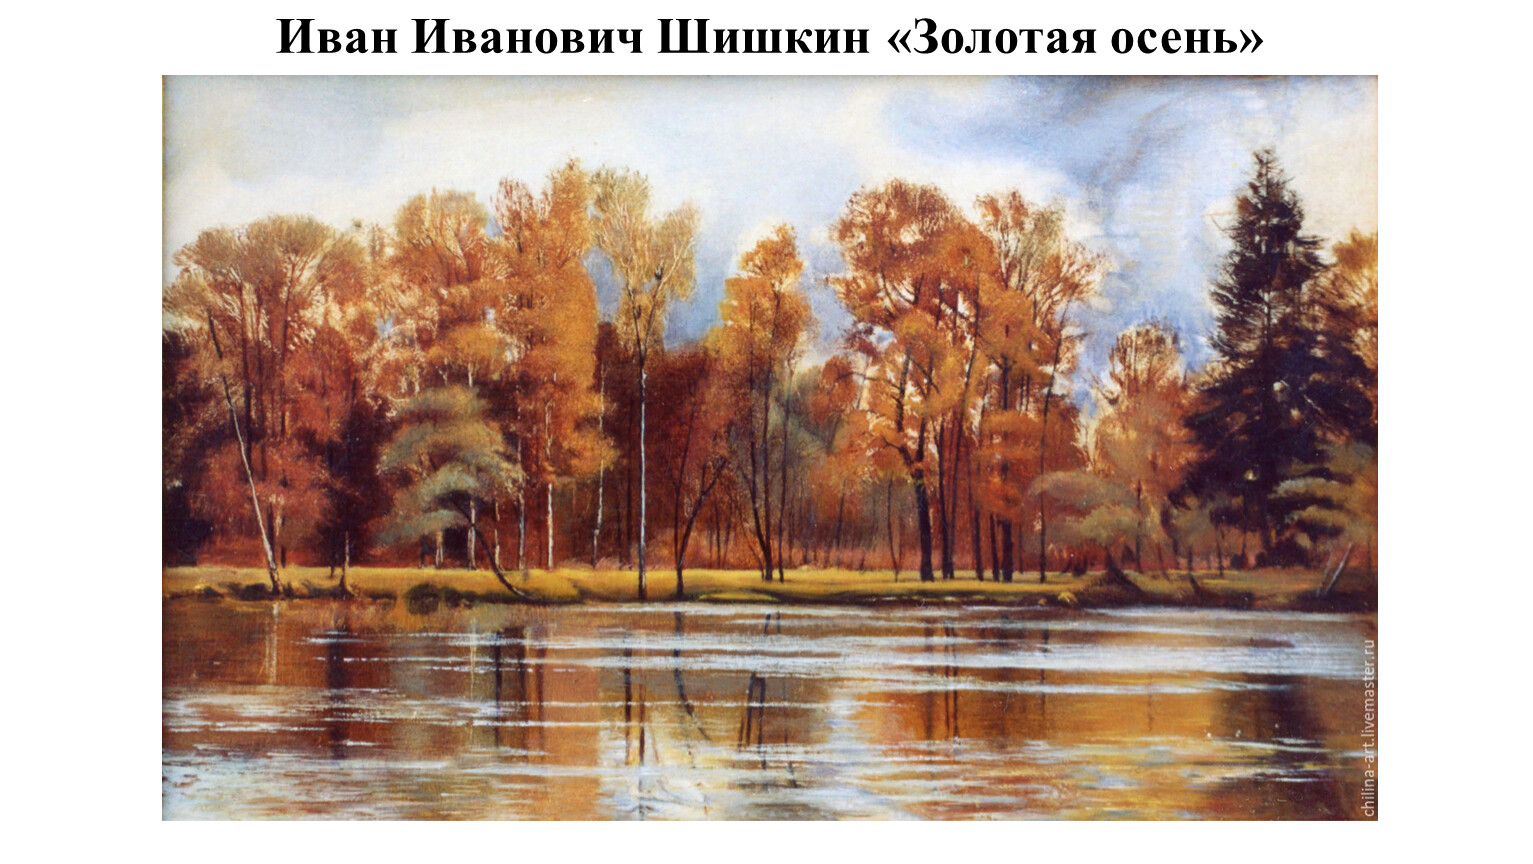 Шишкин Иван Иванович Золотая осень